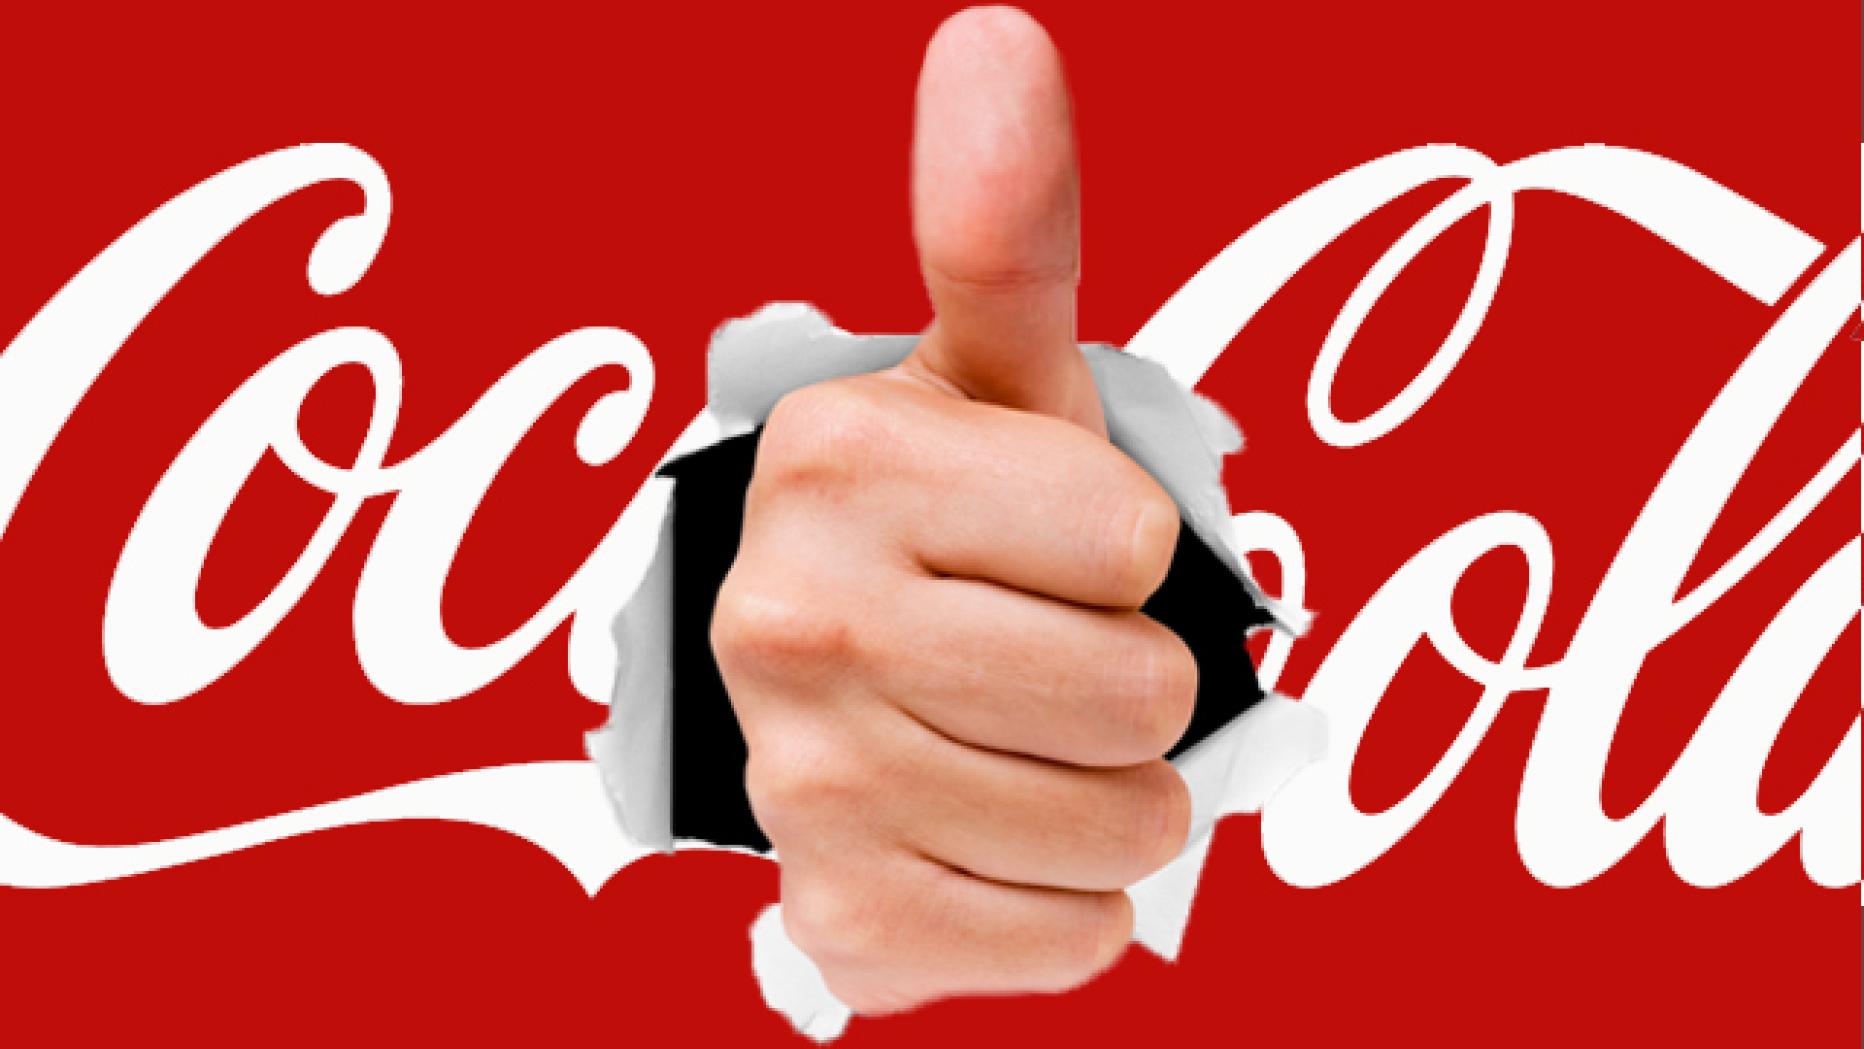 Кола слоган. Coca-Cola. Слоган Кока колы. Вливайся слоган. Все будет Кока-кола слоган.